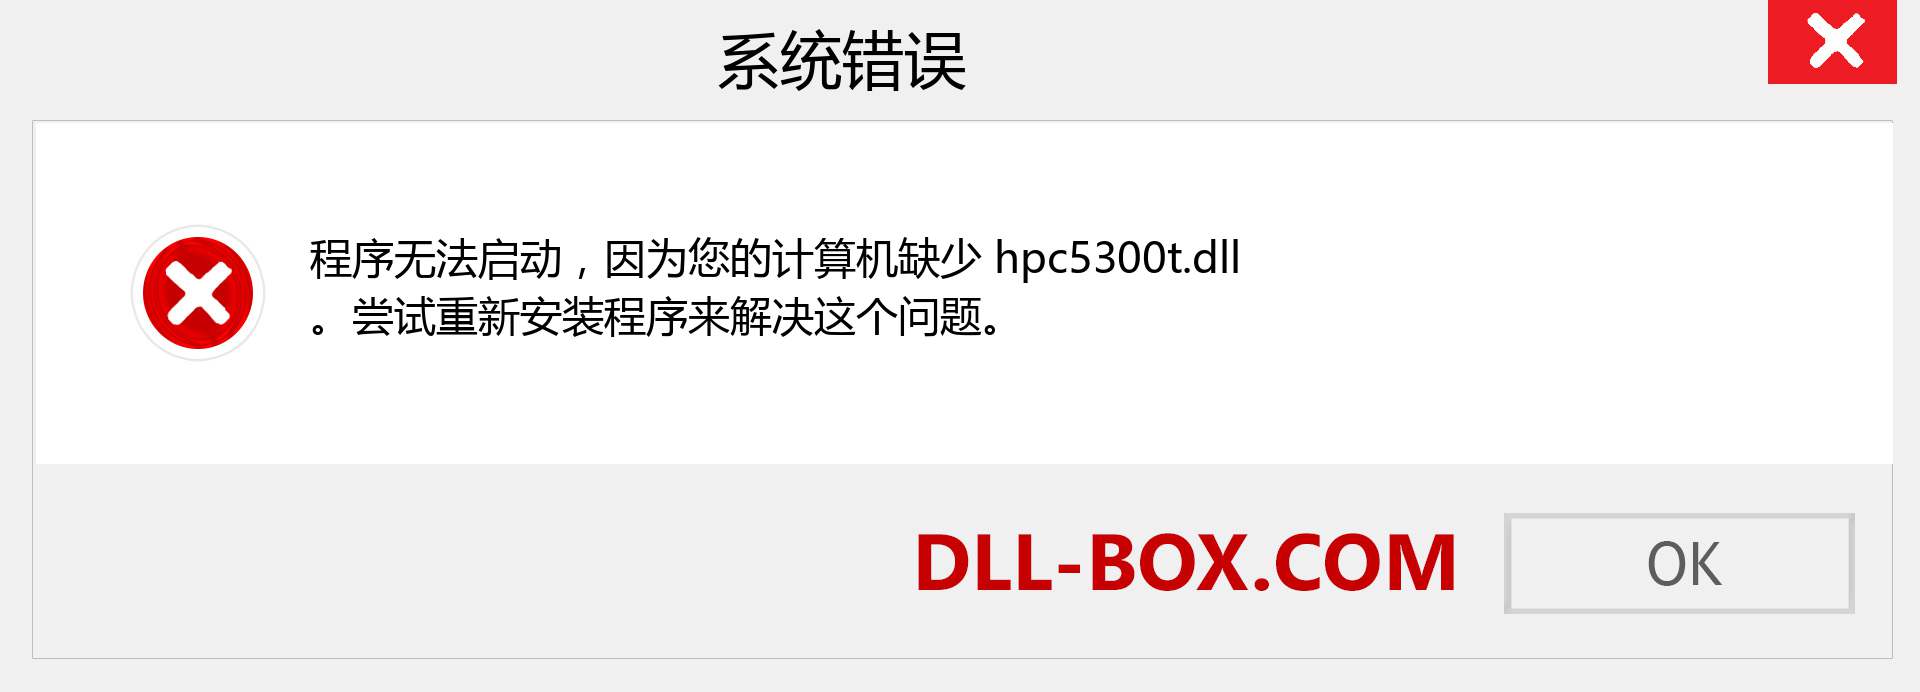 hpc5300t.dll 文件丢失？。 适用于 Windows 7、8、10 的下载 - 修复 Windows、照片、图像上的 hpc5300t dll 丢失错误